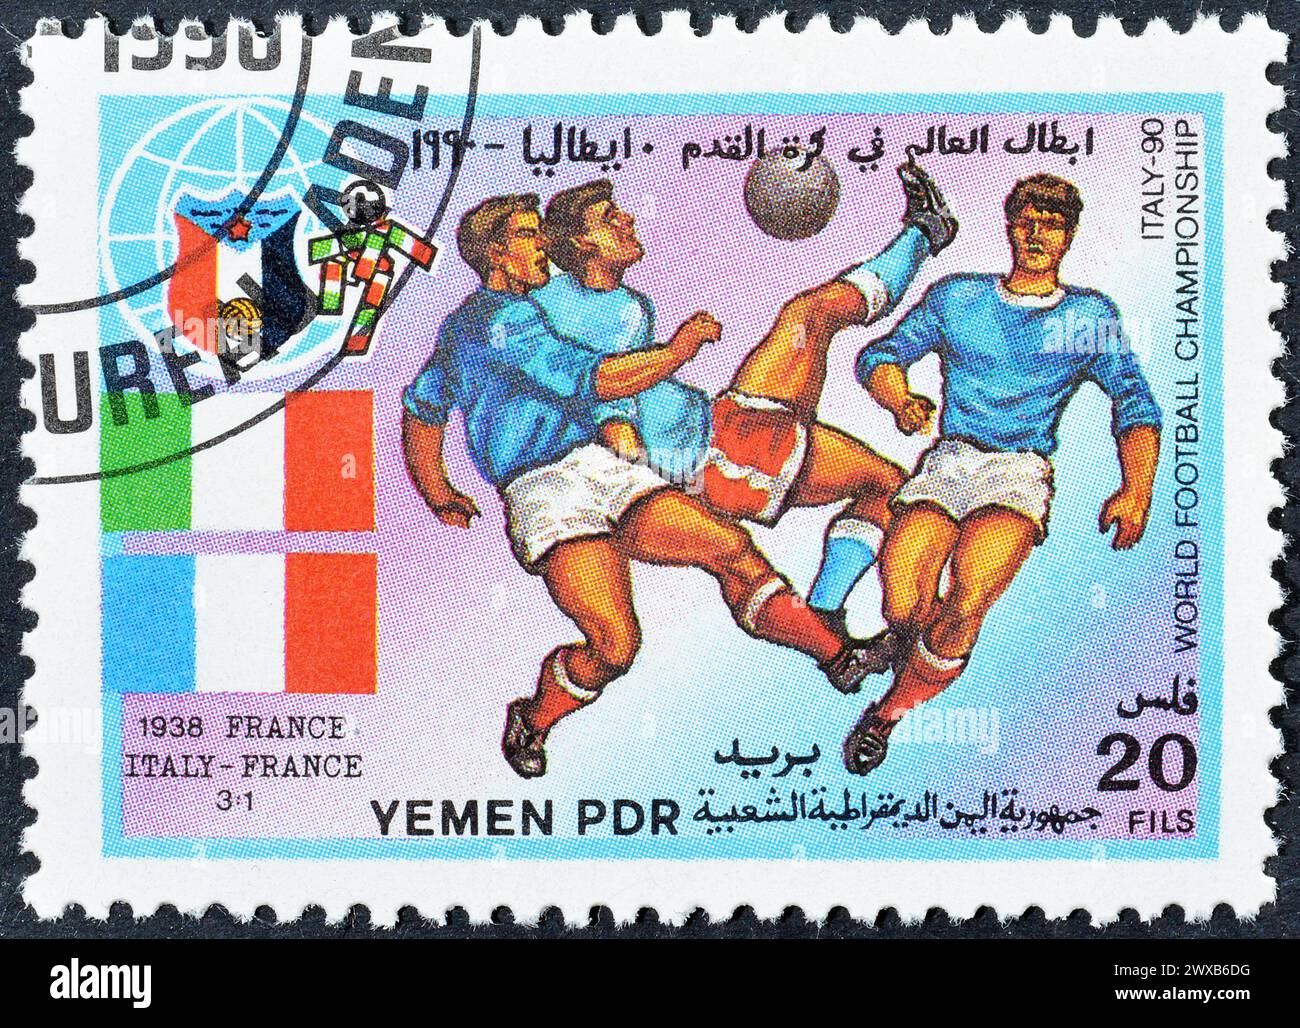 Gestempelte Briefmarke, gedruckt vom Jemen, die das Spiel Italien-Frankreich 1938, FIFA Fussball-Weltmeisterschaft 1990 - Italien, um 1990 zeigt. Stockfoto